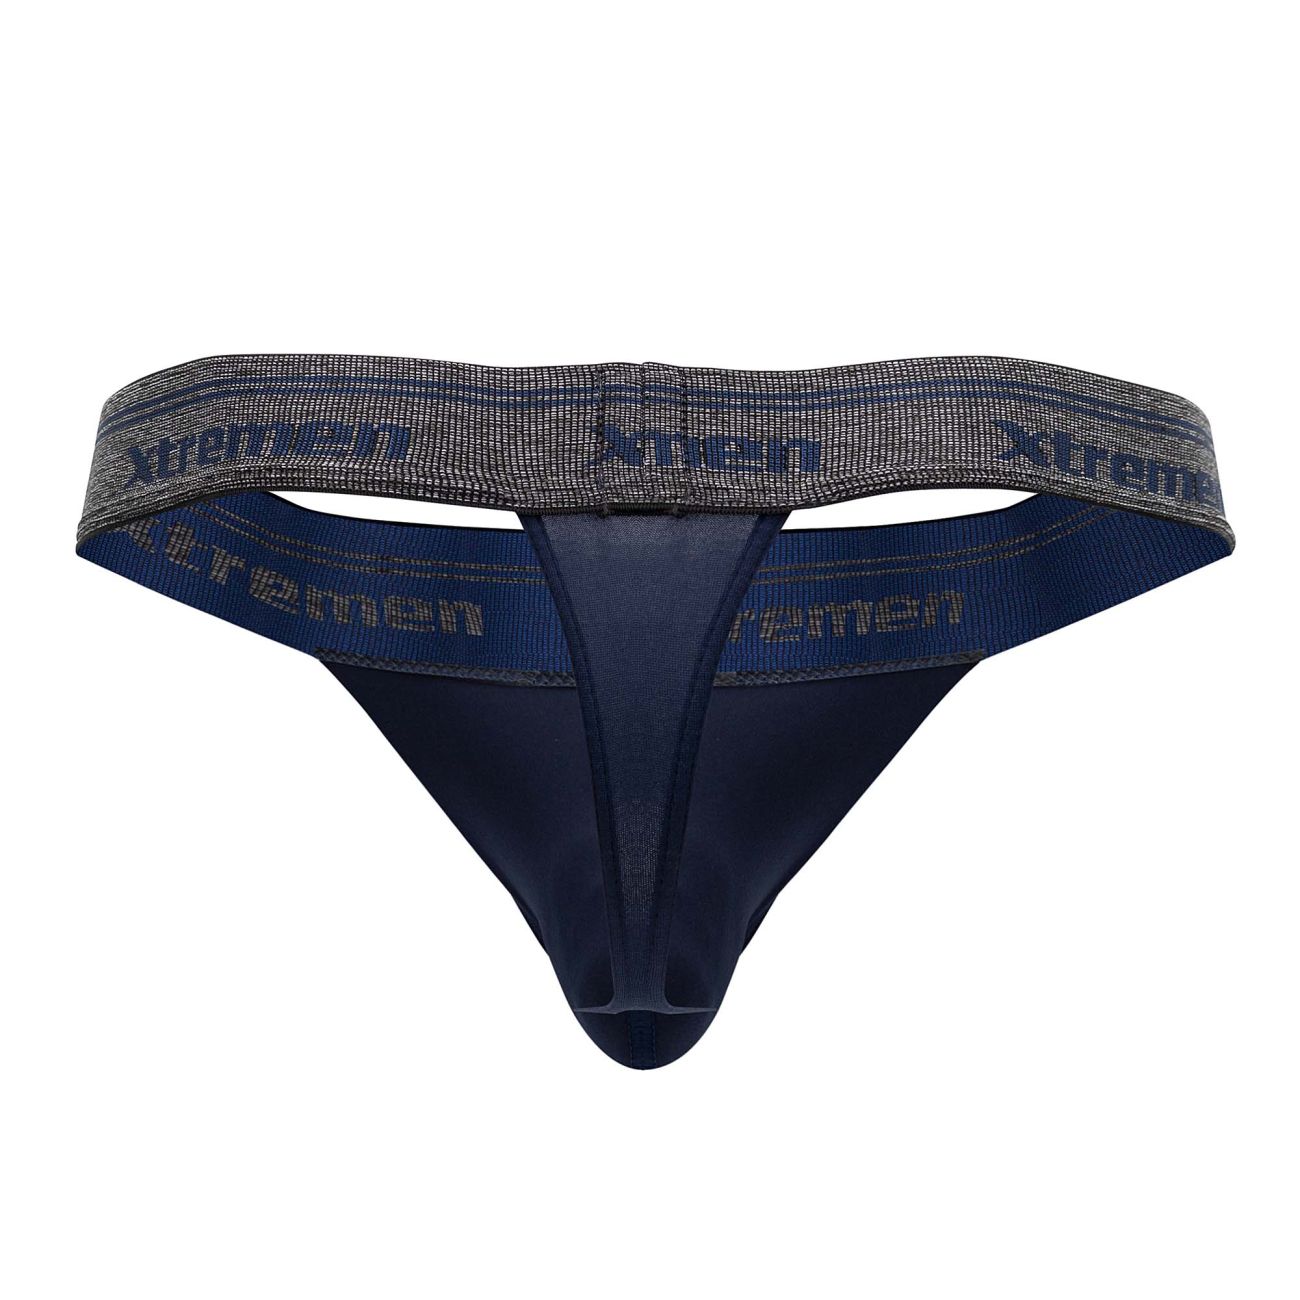 Xtremen 91141 Ultra-soft Thongs